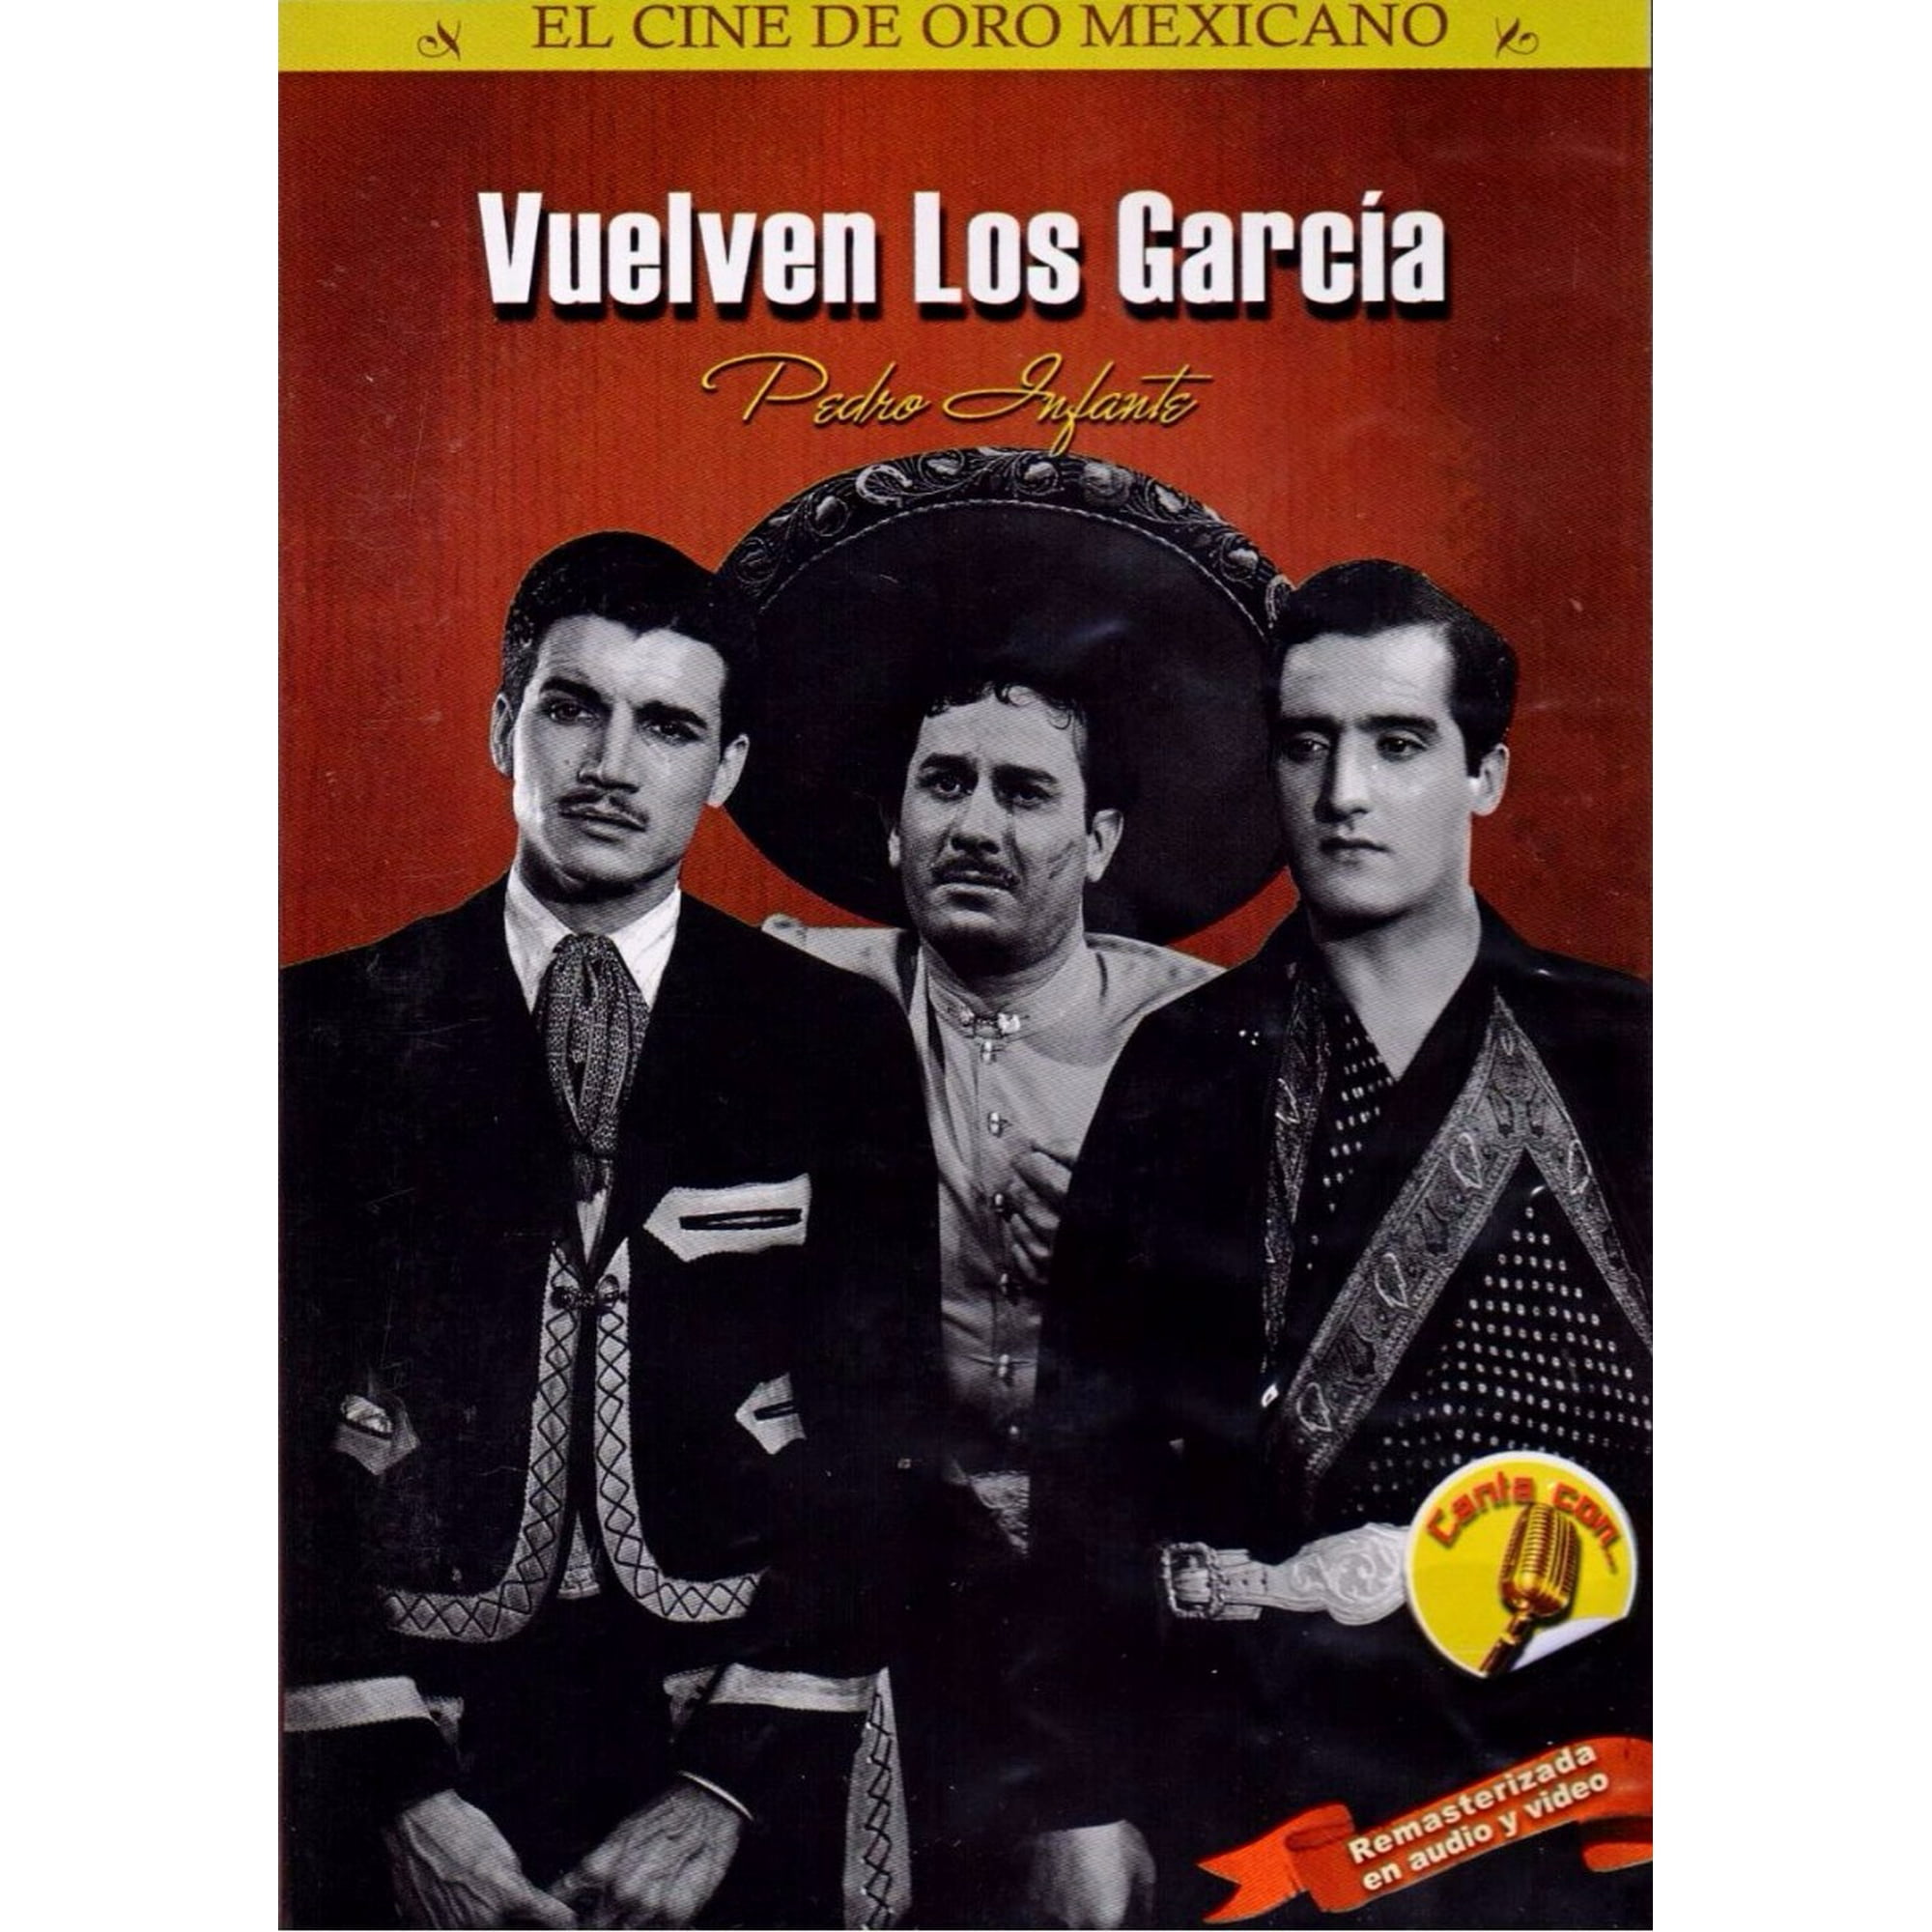 Vuelven Los Garcia Pedro Infante Pelicula Dvd ON SCREEN Vuelven Los ...